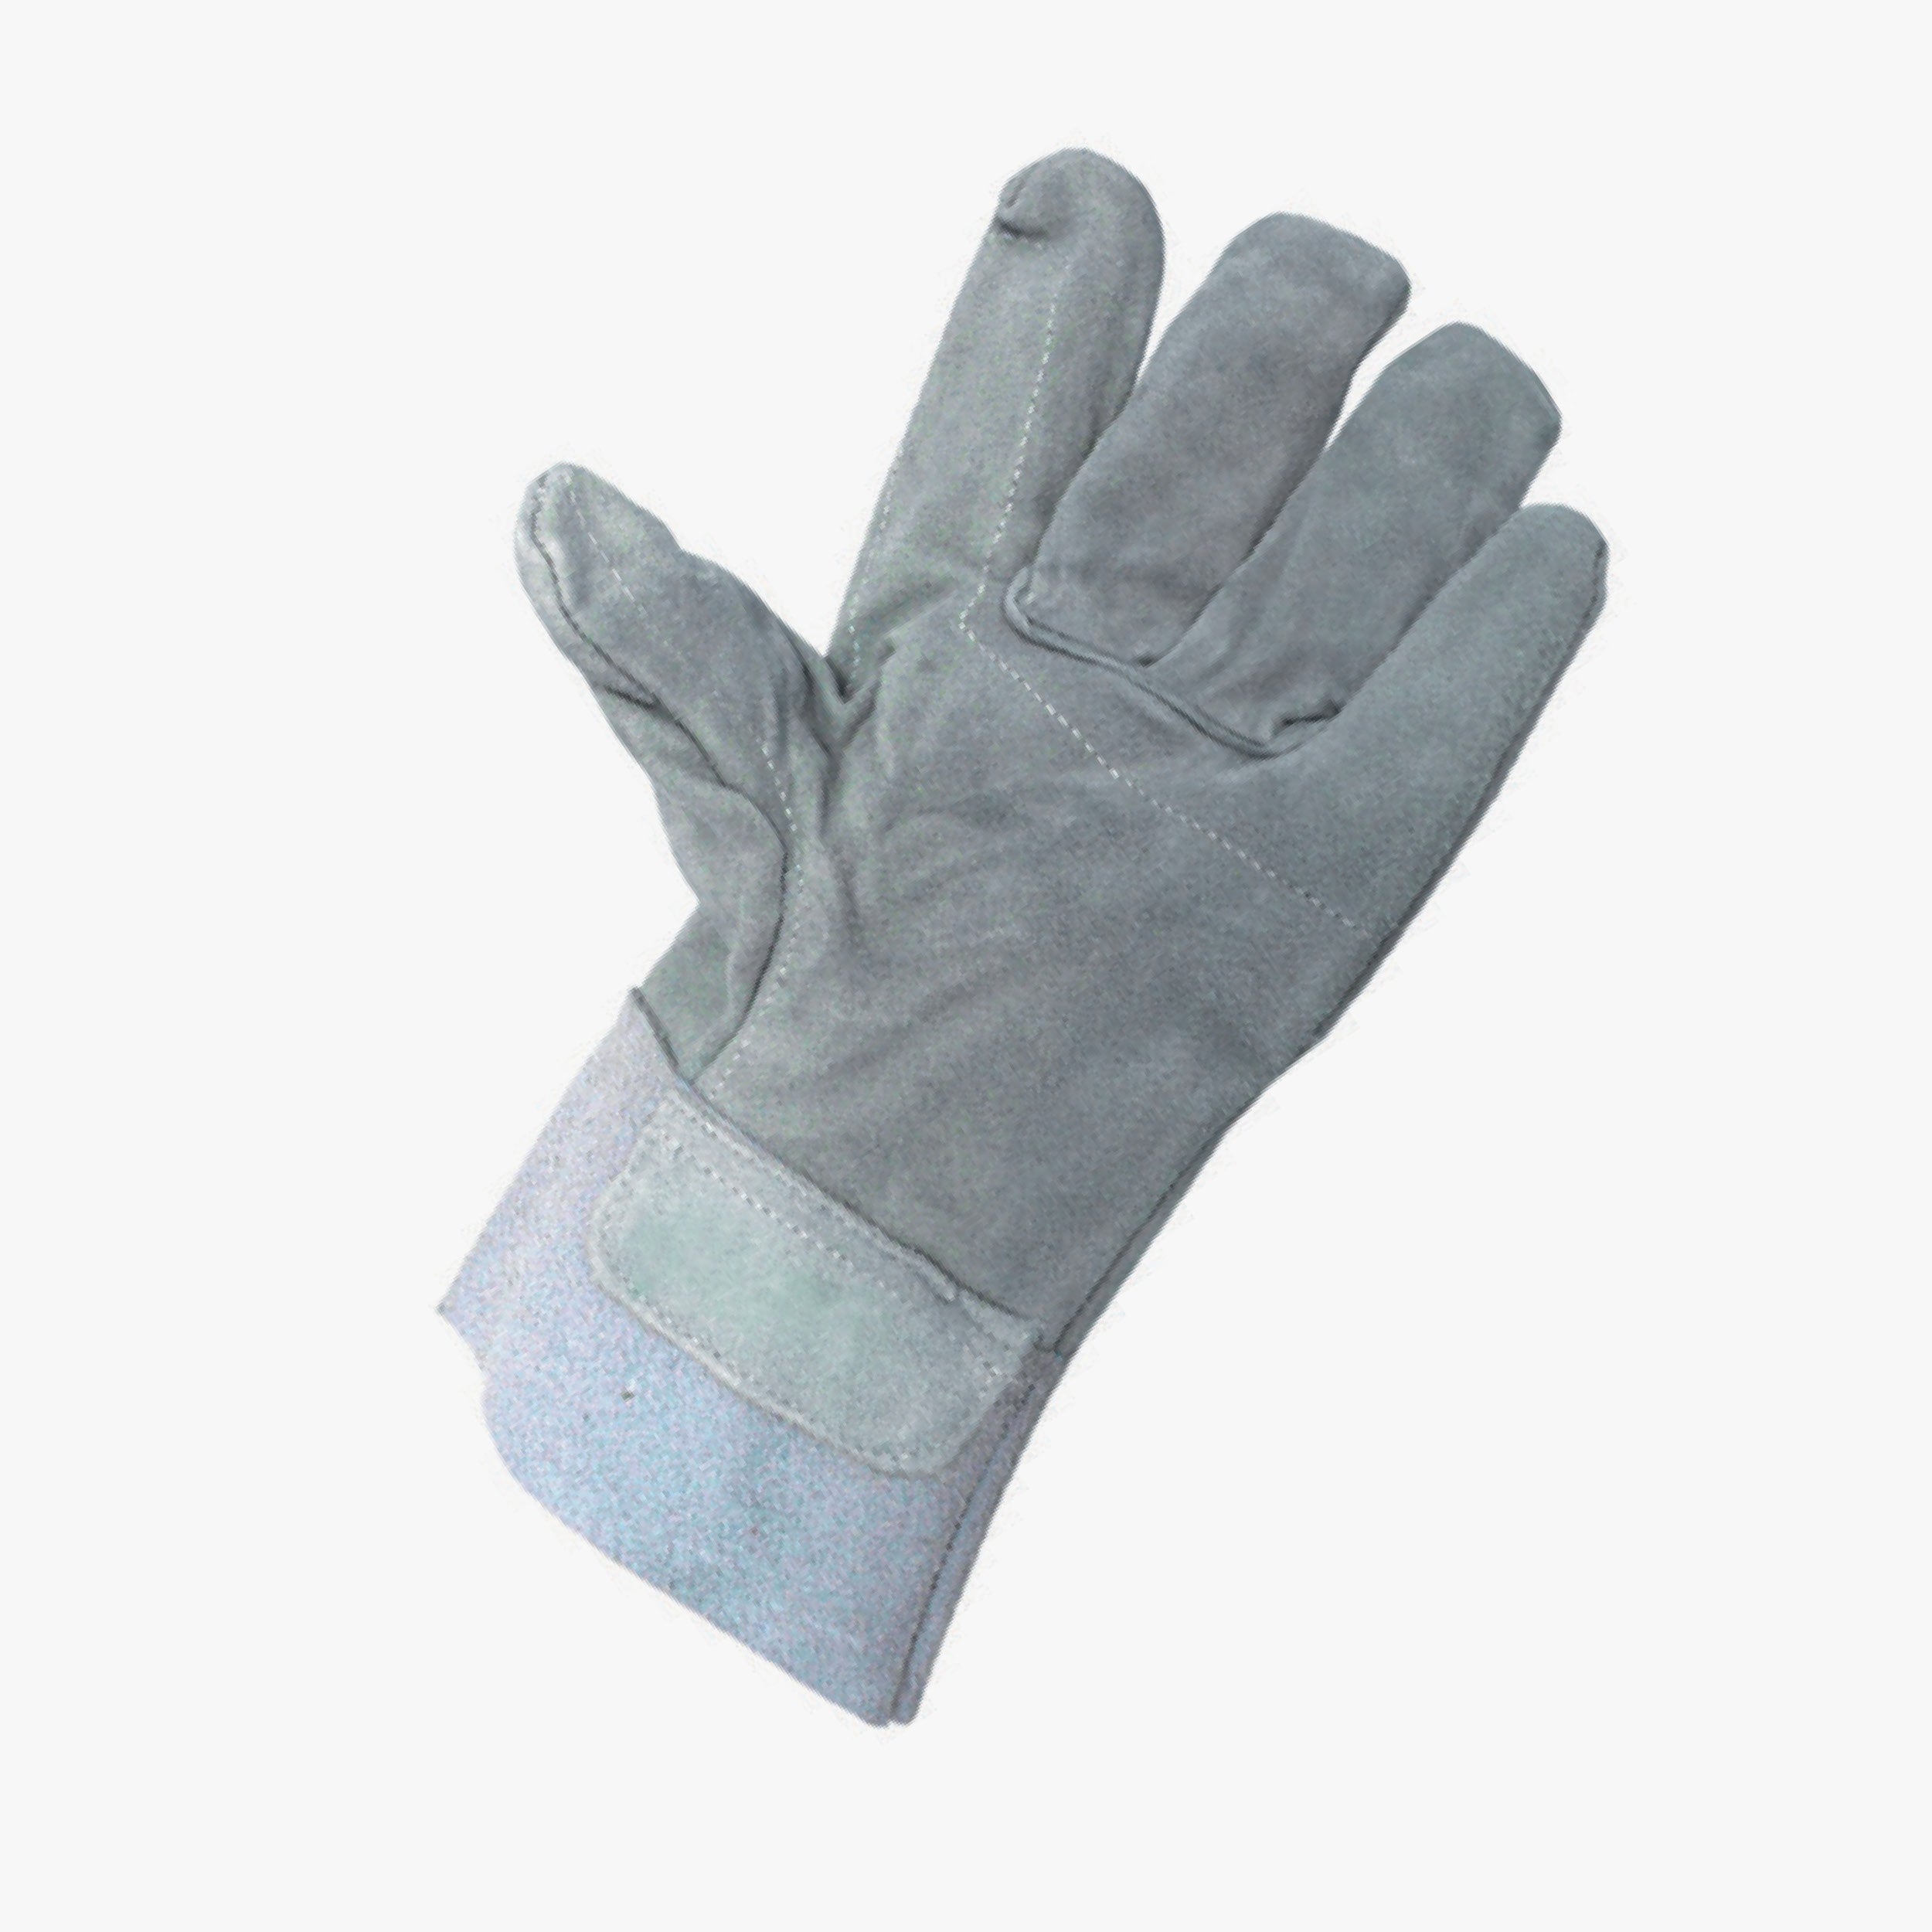 Gloves OK INTERNAL REINFORCEMENT - 10pcs